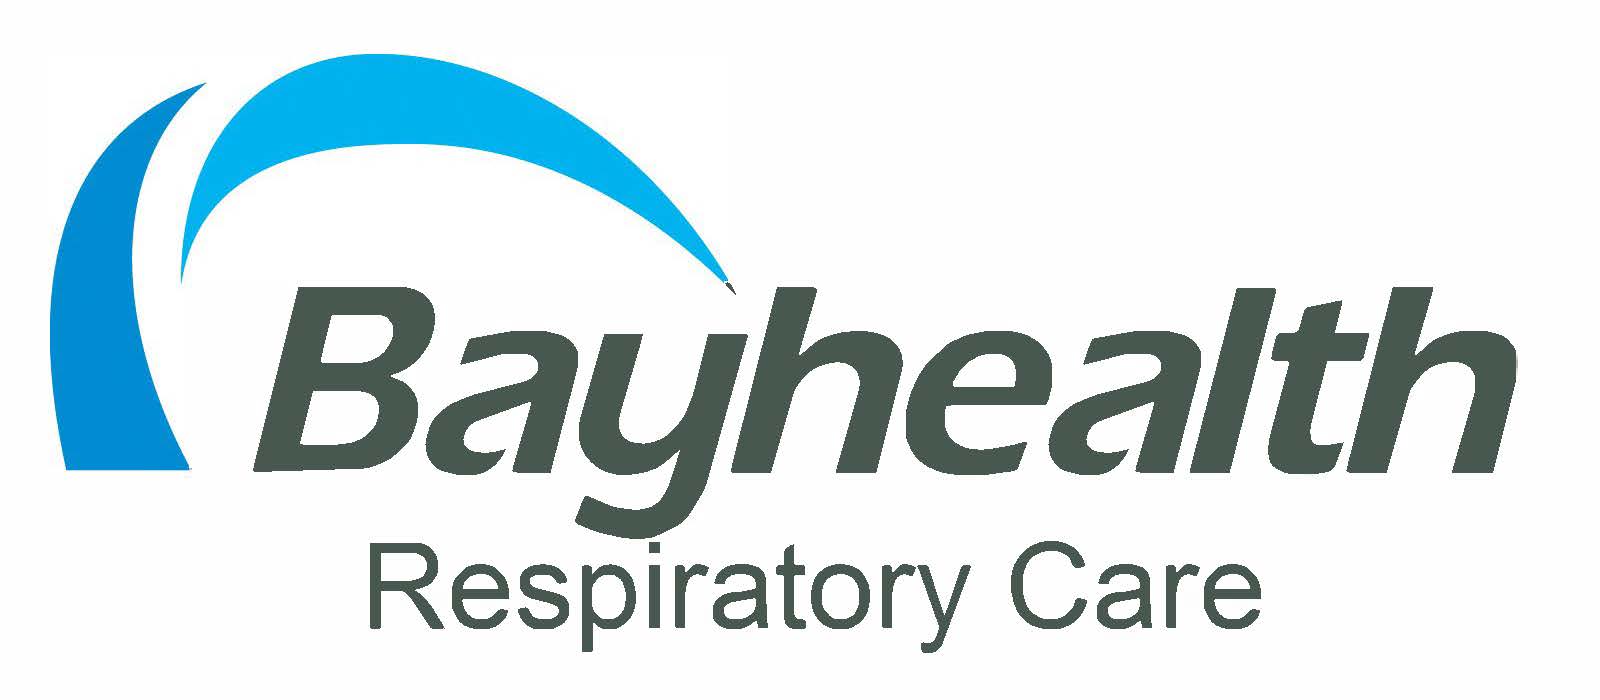 BayhealthLogo_RGB_Respiratory.jpg